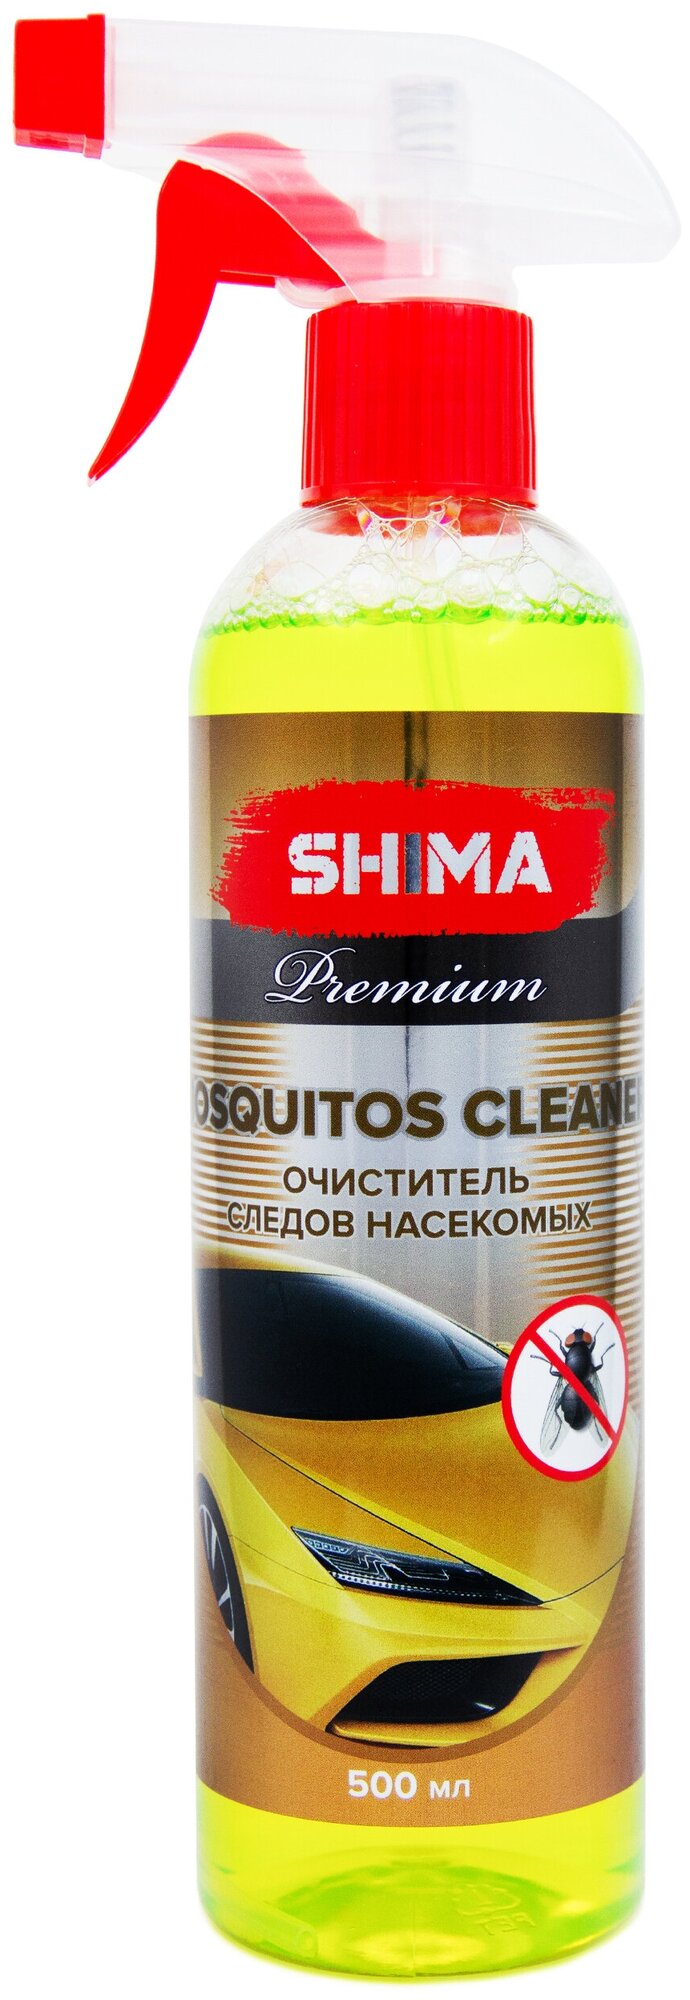 Очиститель кузова автомобиля и стекол от насекомых SHIMA Premium MOSQUITOS CLEANER 500 мл. Art: 4631111103449